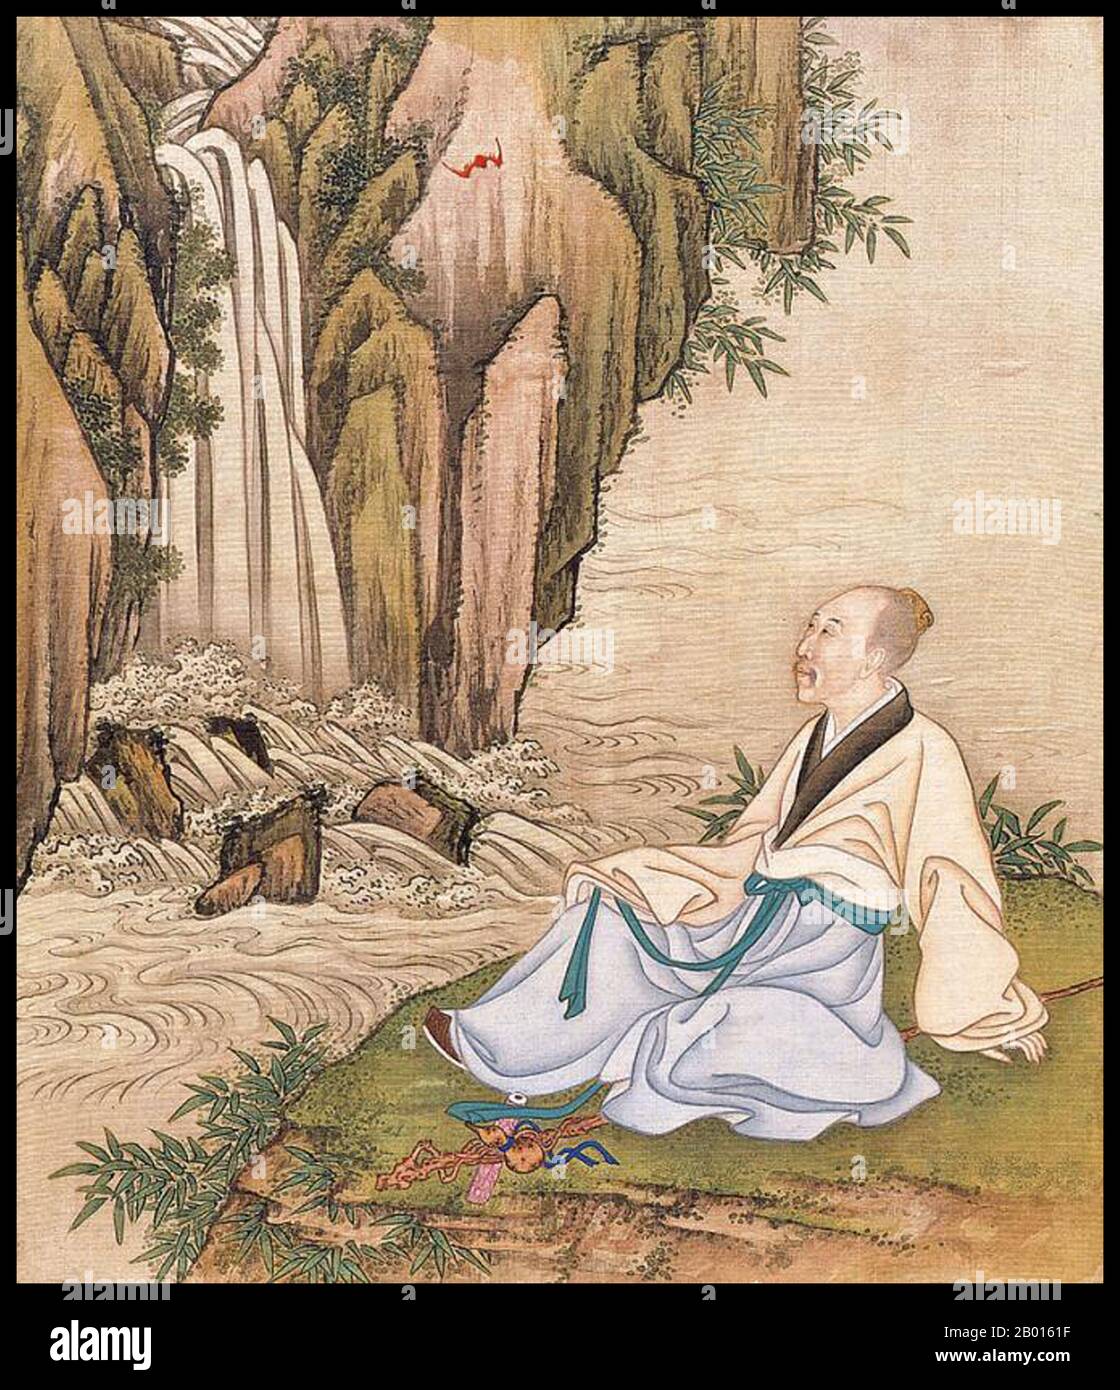 China: Emperador Yongzheng (13 de diciembre de 1678 – 8 de octubre de 1735), 5th gobernante de la dinastía Qing (r. 1722-1735), relajándose en una cascada. Pintura de hojas de álbum, c. 1723-1735. El Emperador Yongzheng, nacido Yinzhen y templo llamado Shizong, fue el quinto emperador de la dinastía Qing. El principal objetivo de Yongzheng, un gobernante trabajador, era crear un gobierno efectivo a un costo mínimo. Al igual que su padre, el emperador Kangxi, Yongzheng utilizó la fuerza militar para preservar la posición de la dinastía. Sospechado por los historiadores de haber usurpado el trono, su reinado fue a menudo llamado despótico, eficiente y vigoroso. Foto de stock